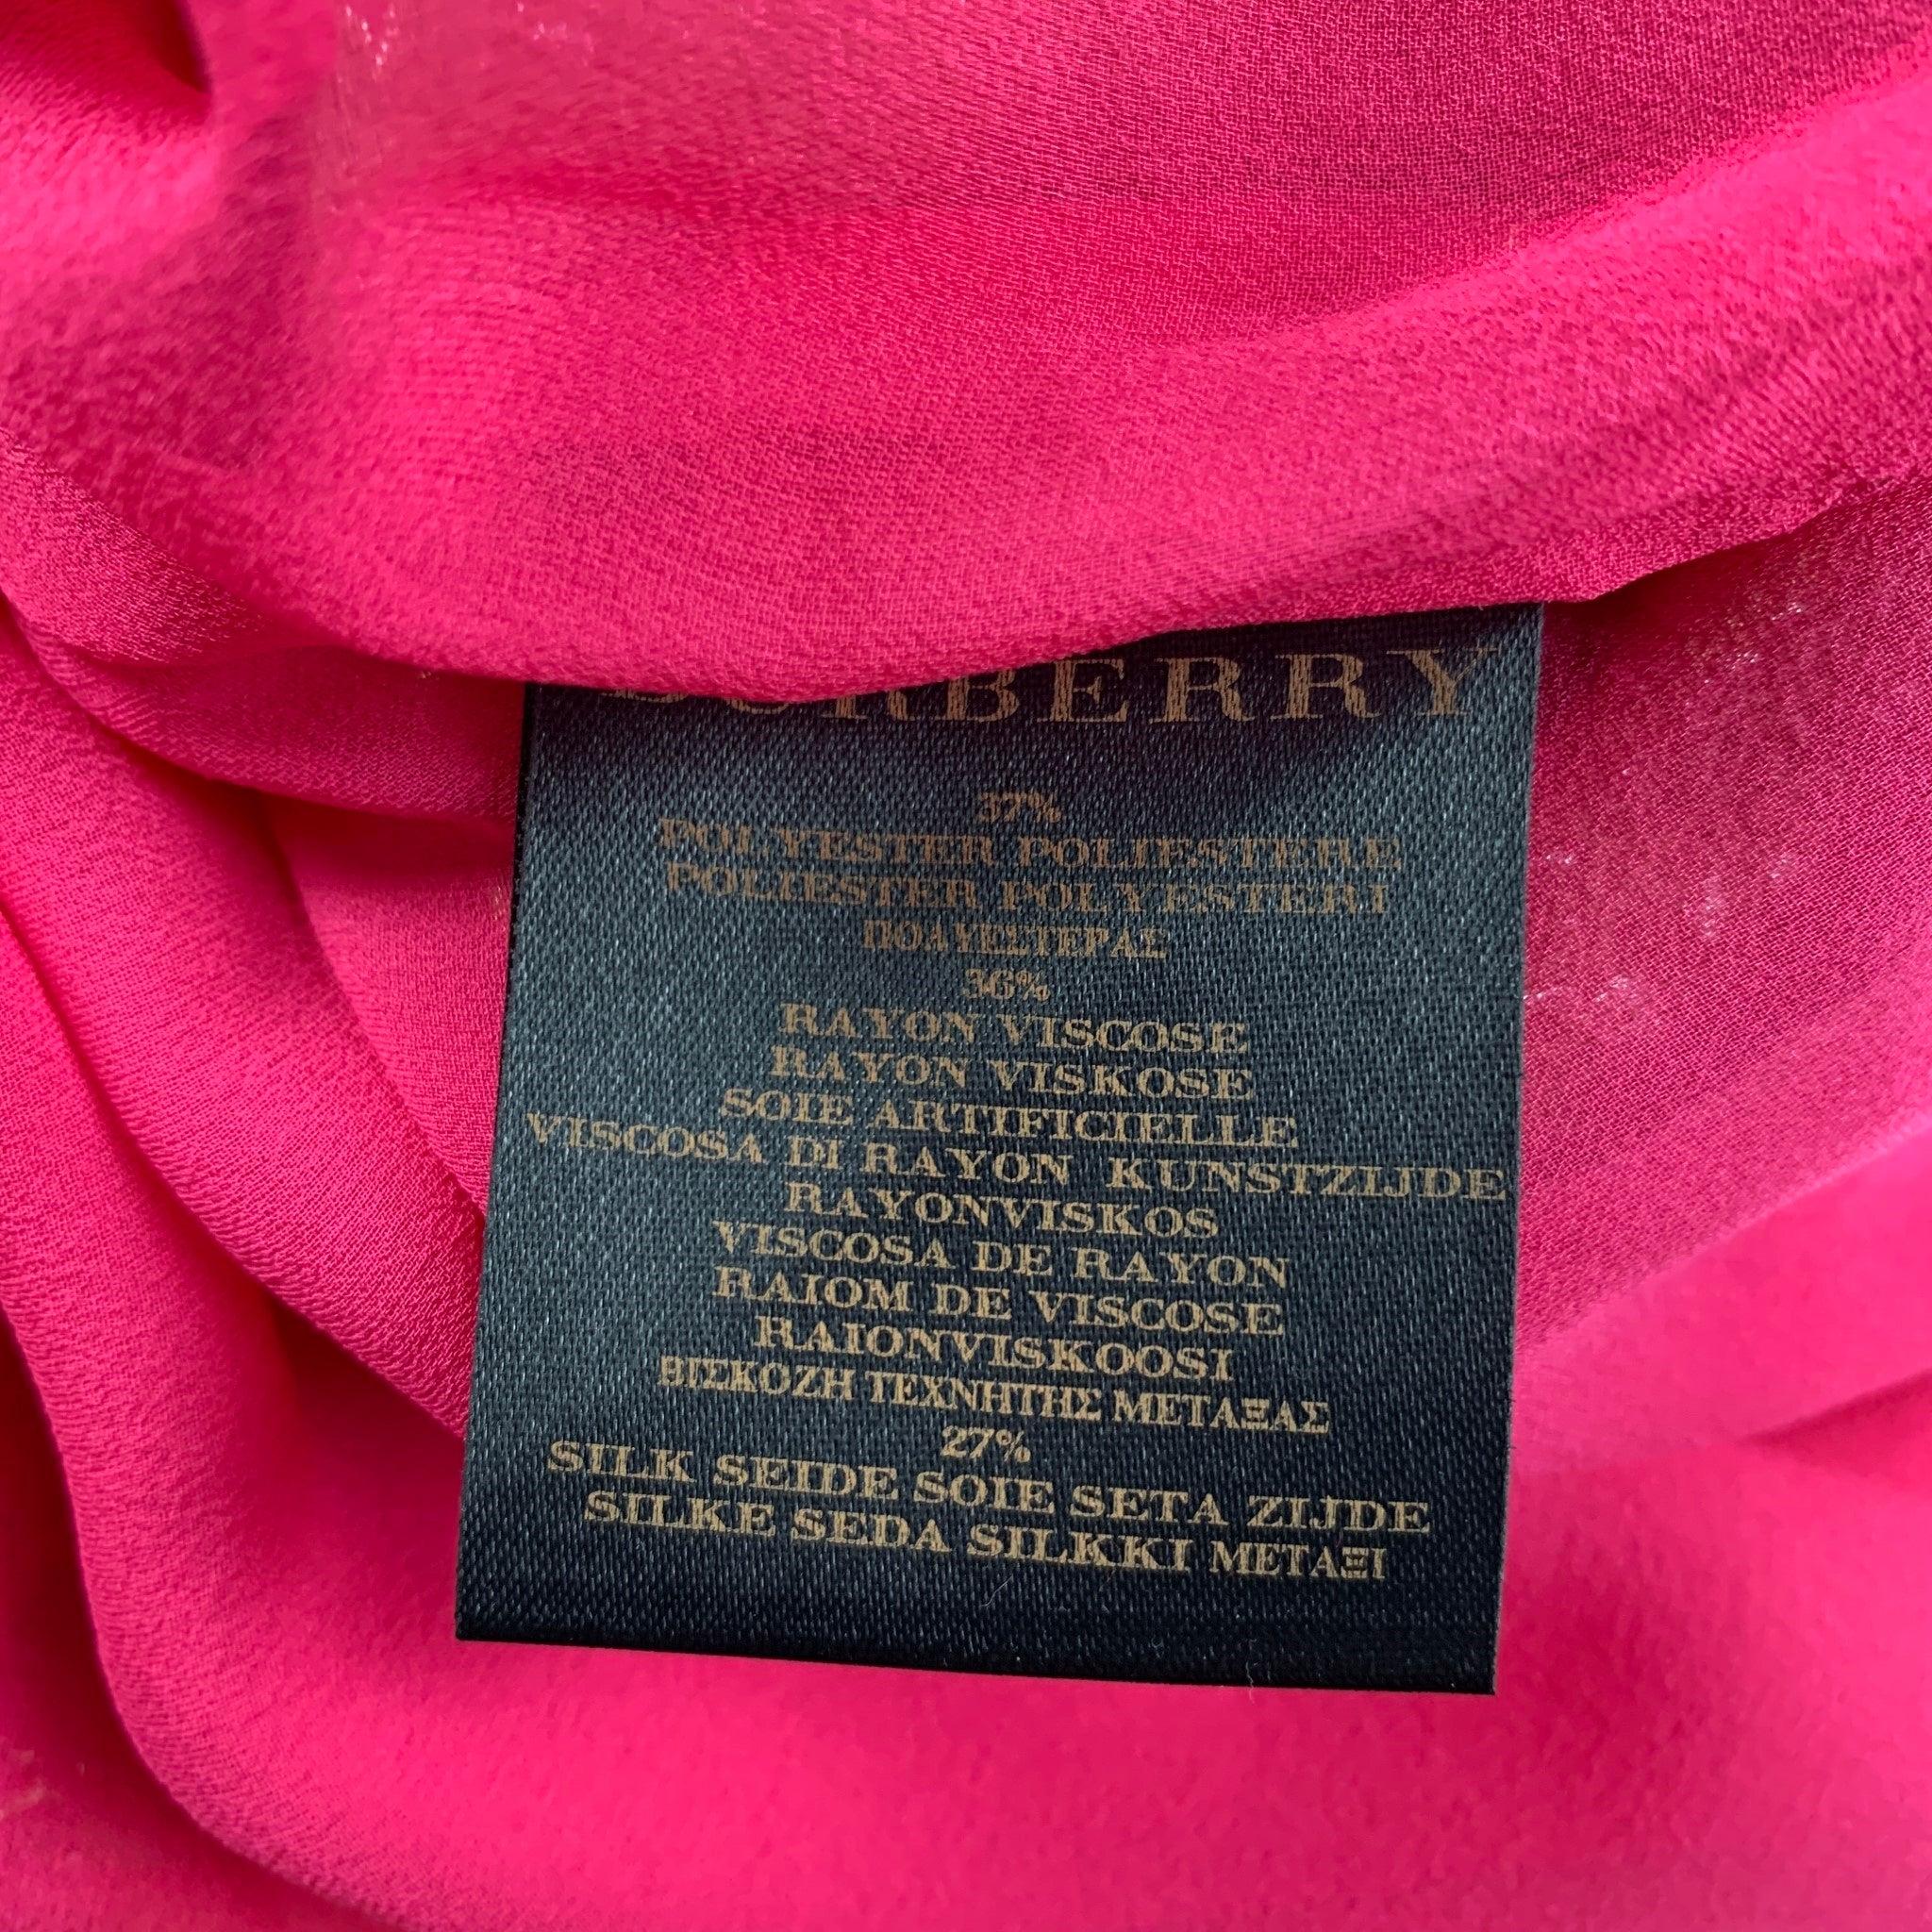 BURBERRY PRORSUM taille 4 rose métallisé polyester soie plissée scintillante Pour femmes en vente